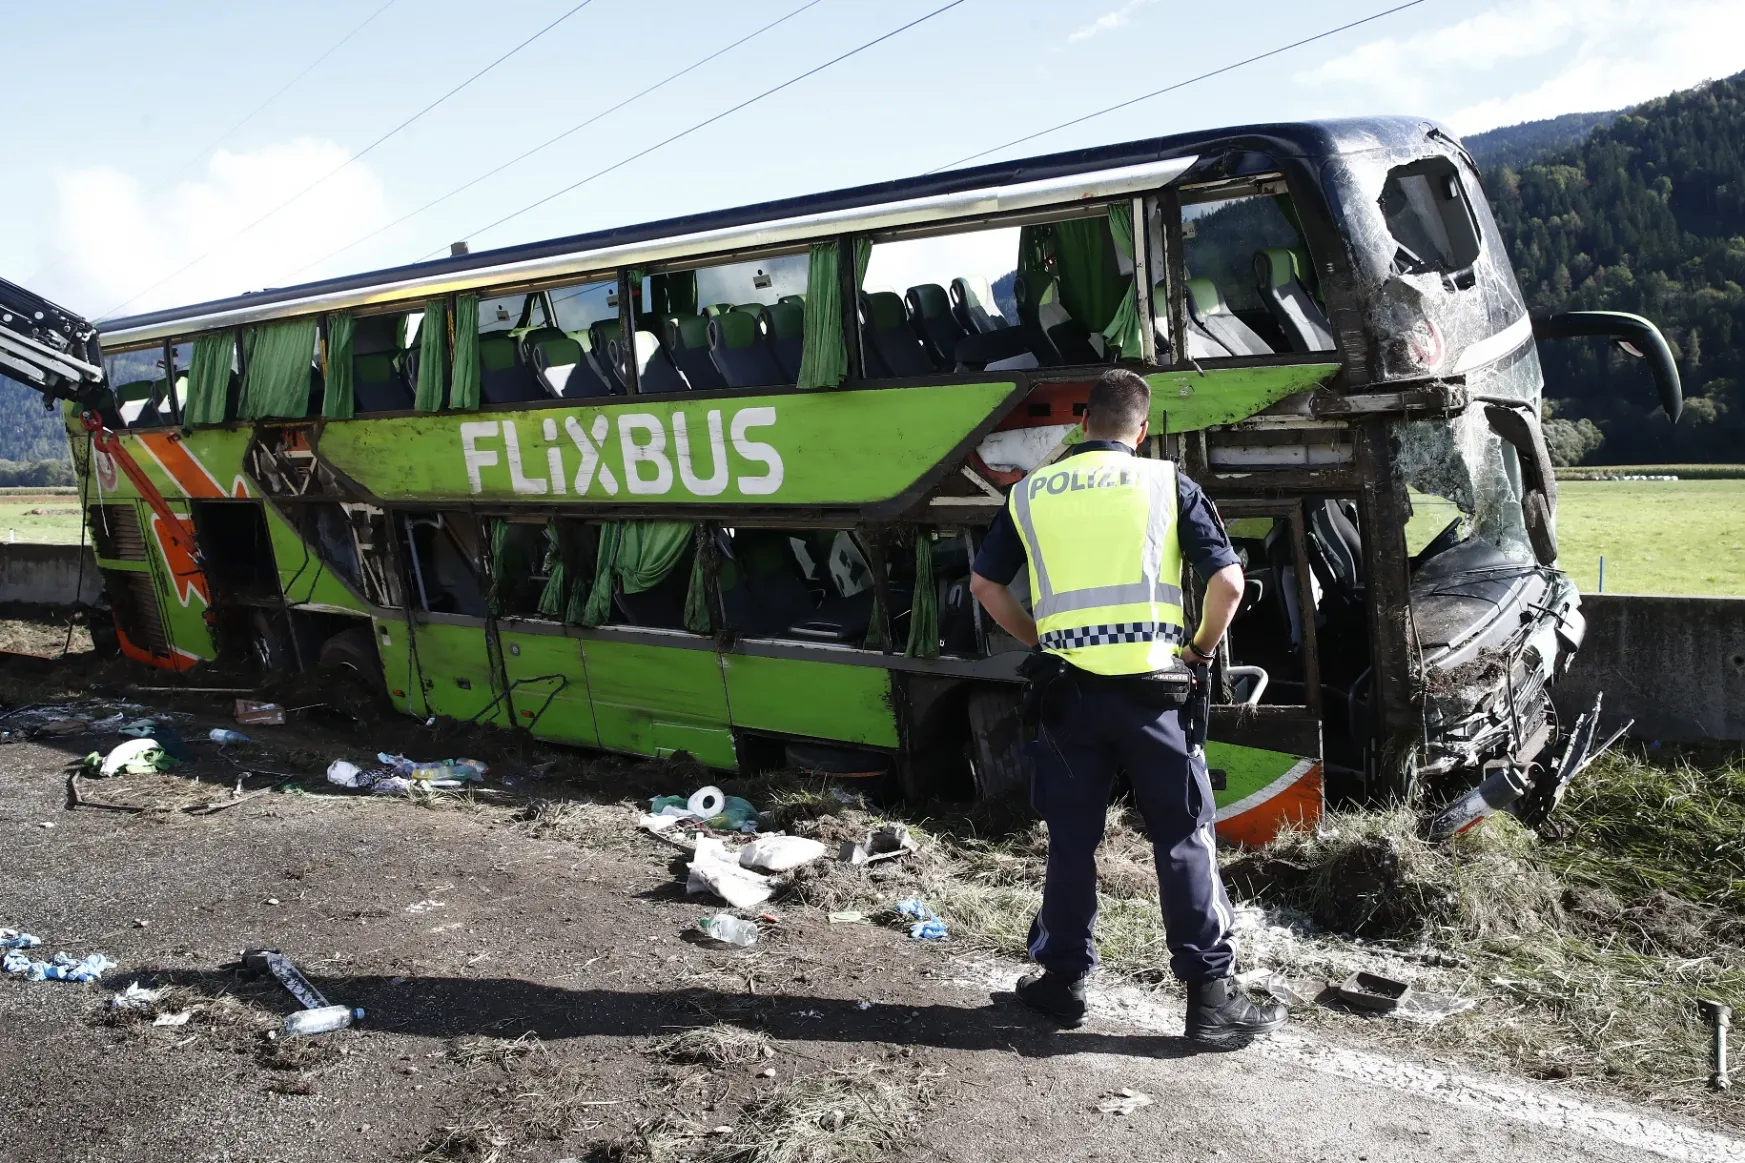 Balesetet szenvedett egy emeletes busz Ausztriában, húszan megsérültek, egy fiatal nő meghalt